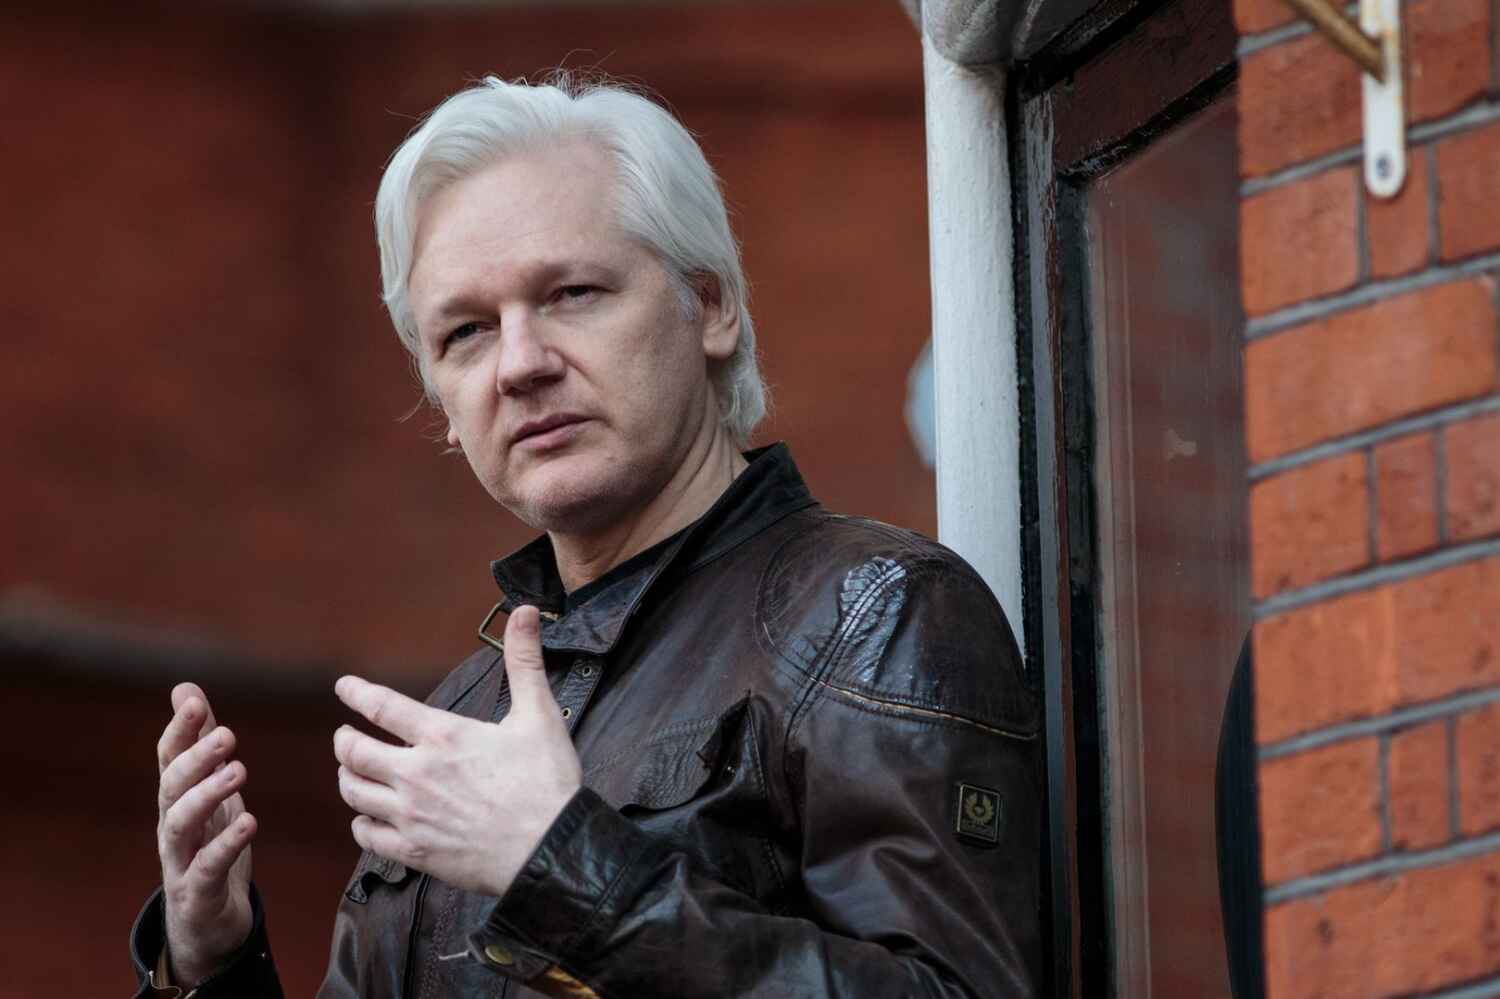 Acuerdo Judicial Permite a Assange Salir en Libertad Tras Años en Prisión Británica